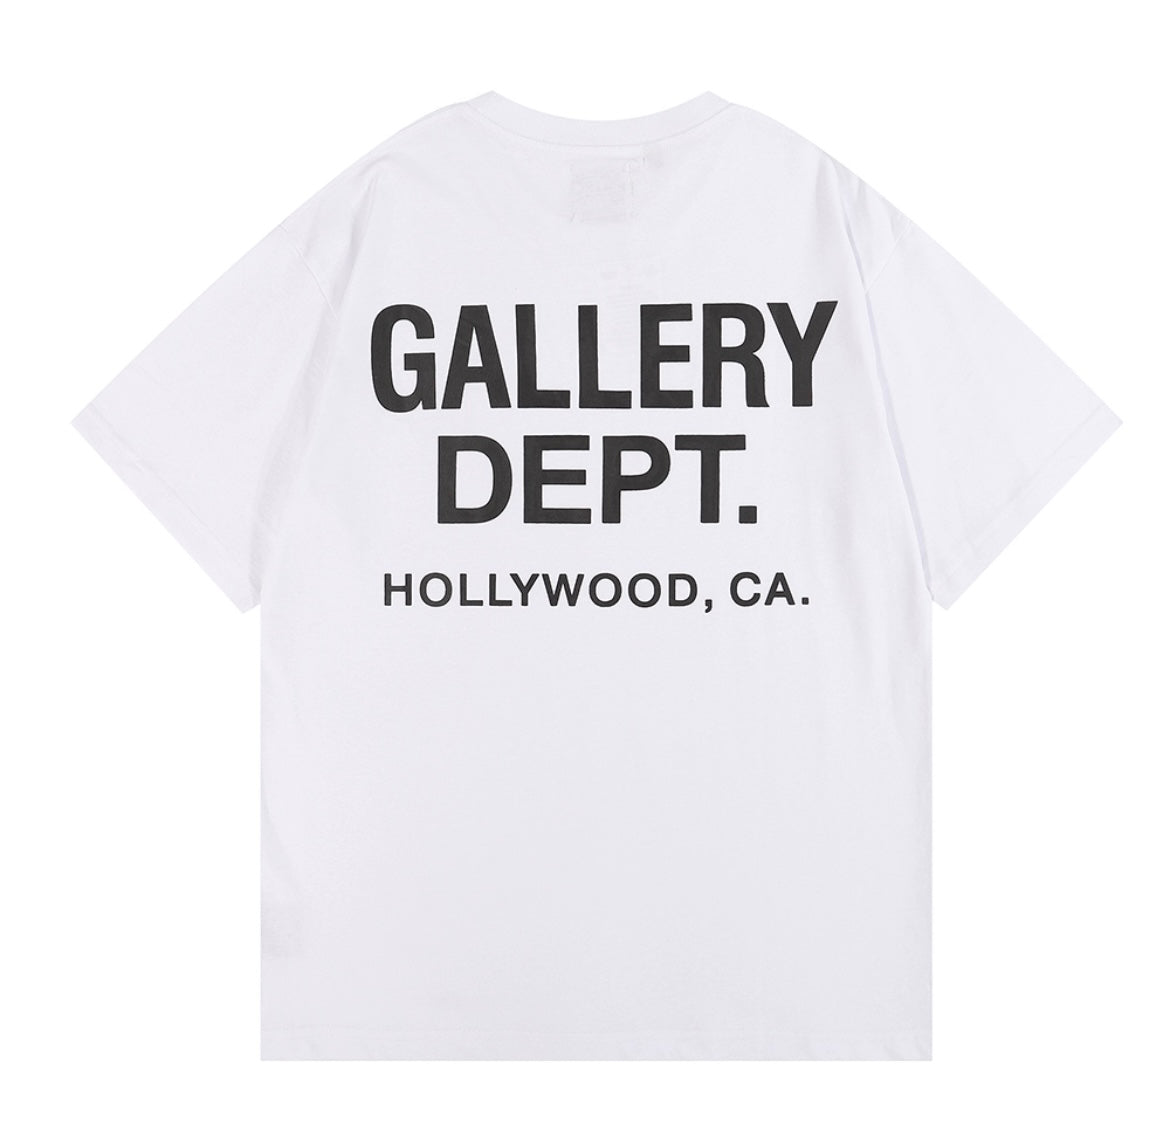 Camiseta Gallery Dept.